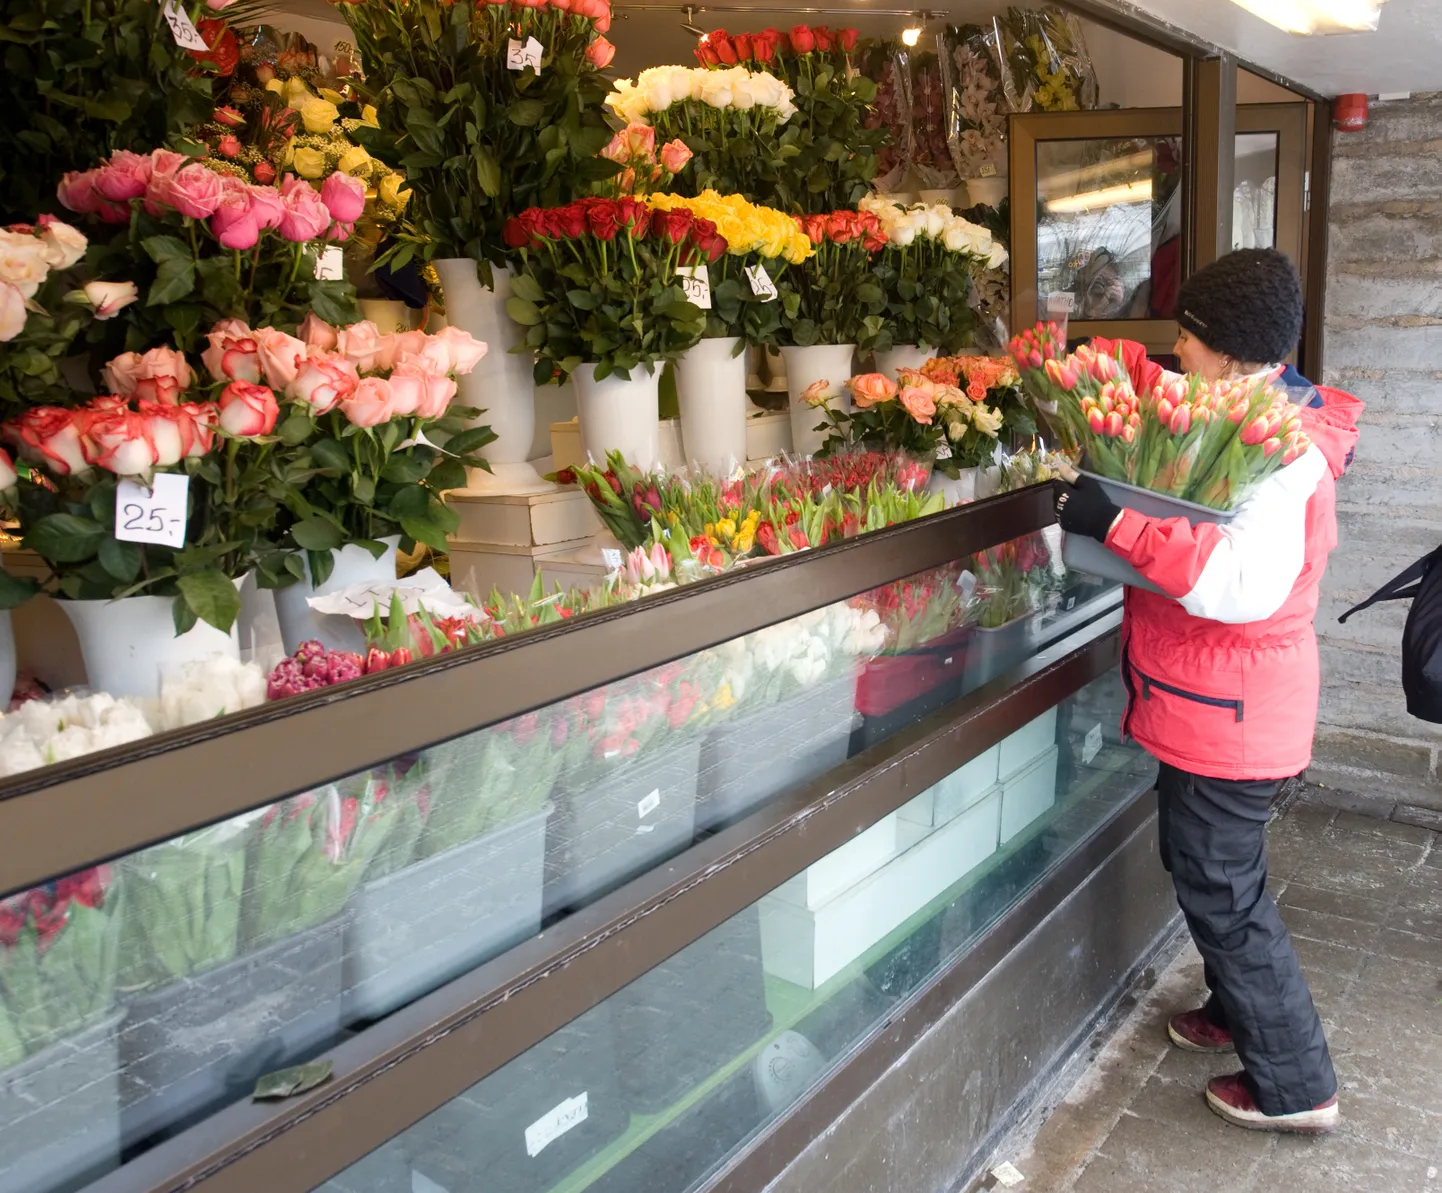 Viru tänava lillemüügi boksid on pealinnas kõige parem paik õitsva kauba müümiseks.